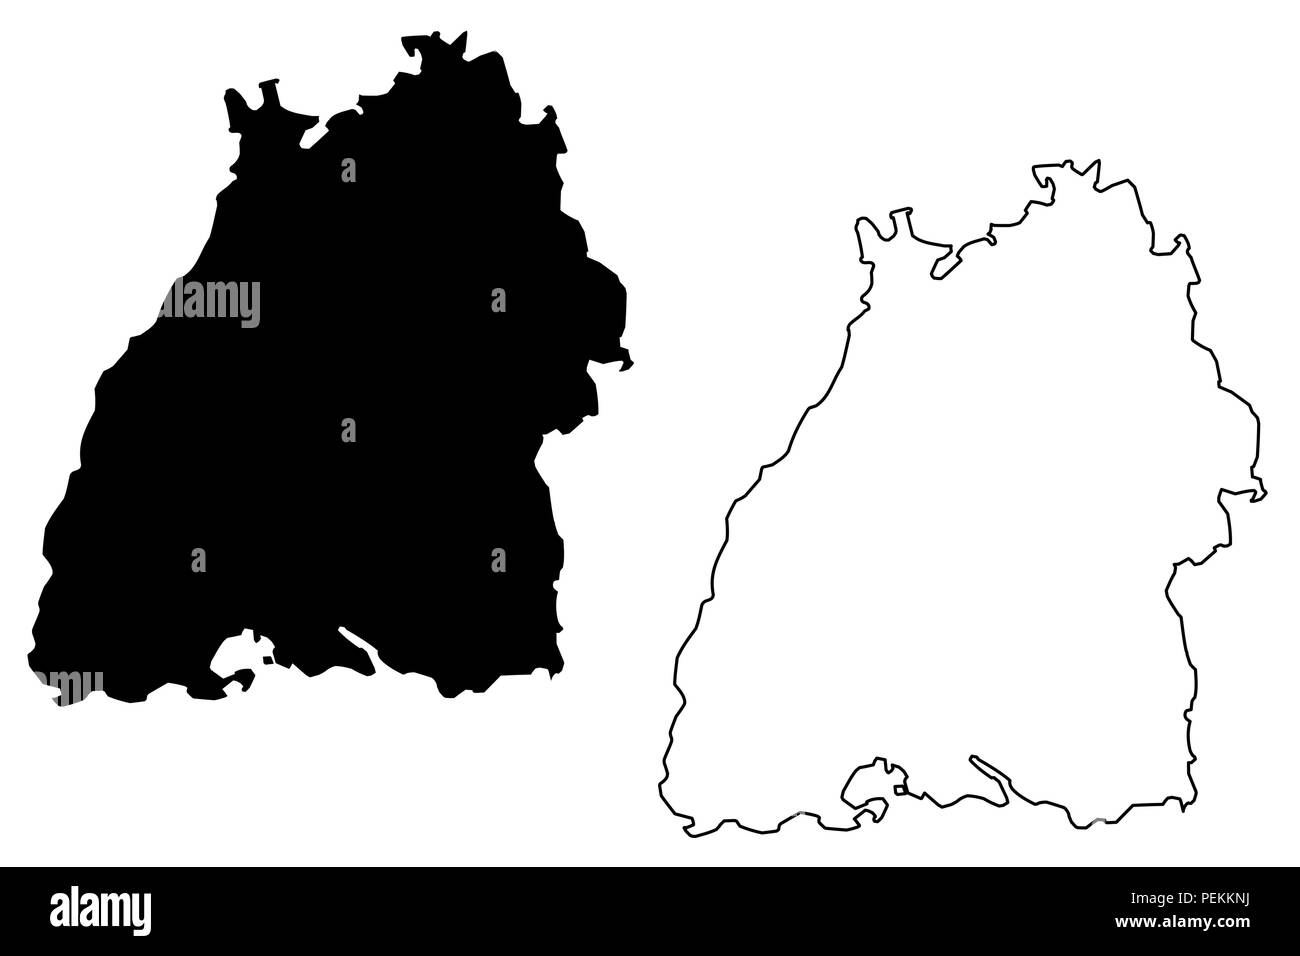 Baden-württemberg (Bundesrepublik Deutschland, Land Deutschland) Karte Vektor-illustration, kritzeln Skizze Baden-Württemberg (Baden-Württemberg) Karte anzeigen Stock Vektor